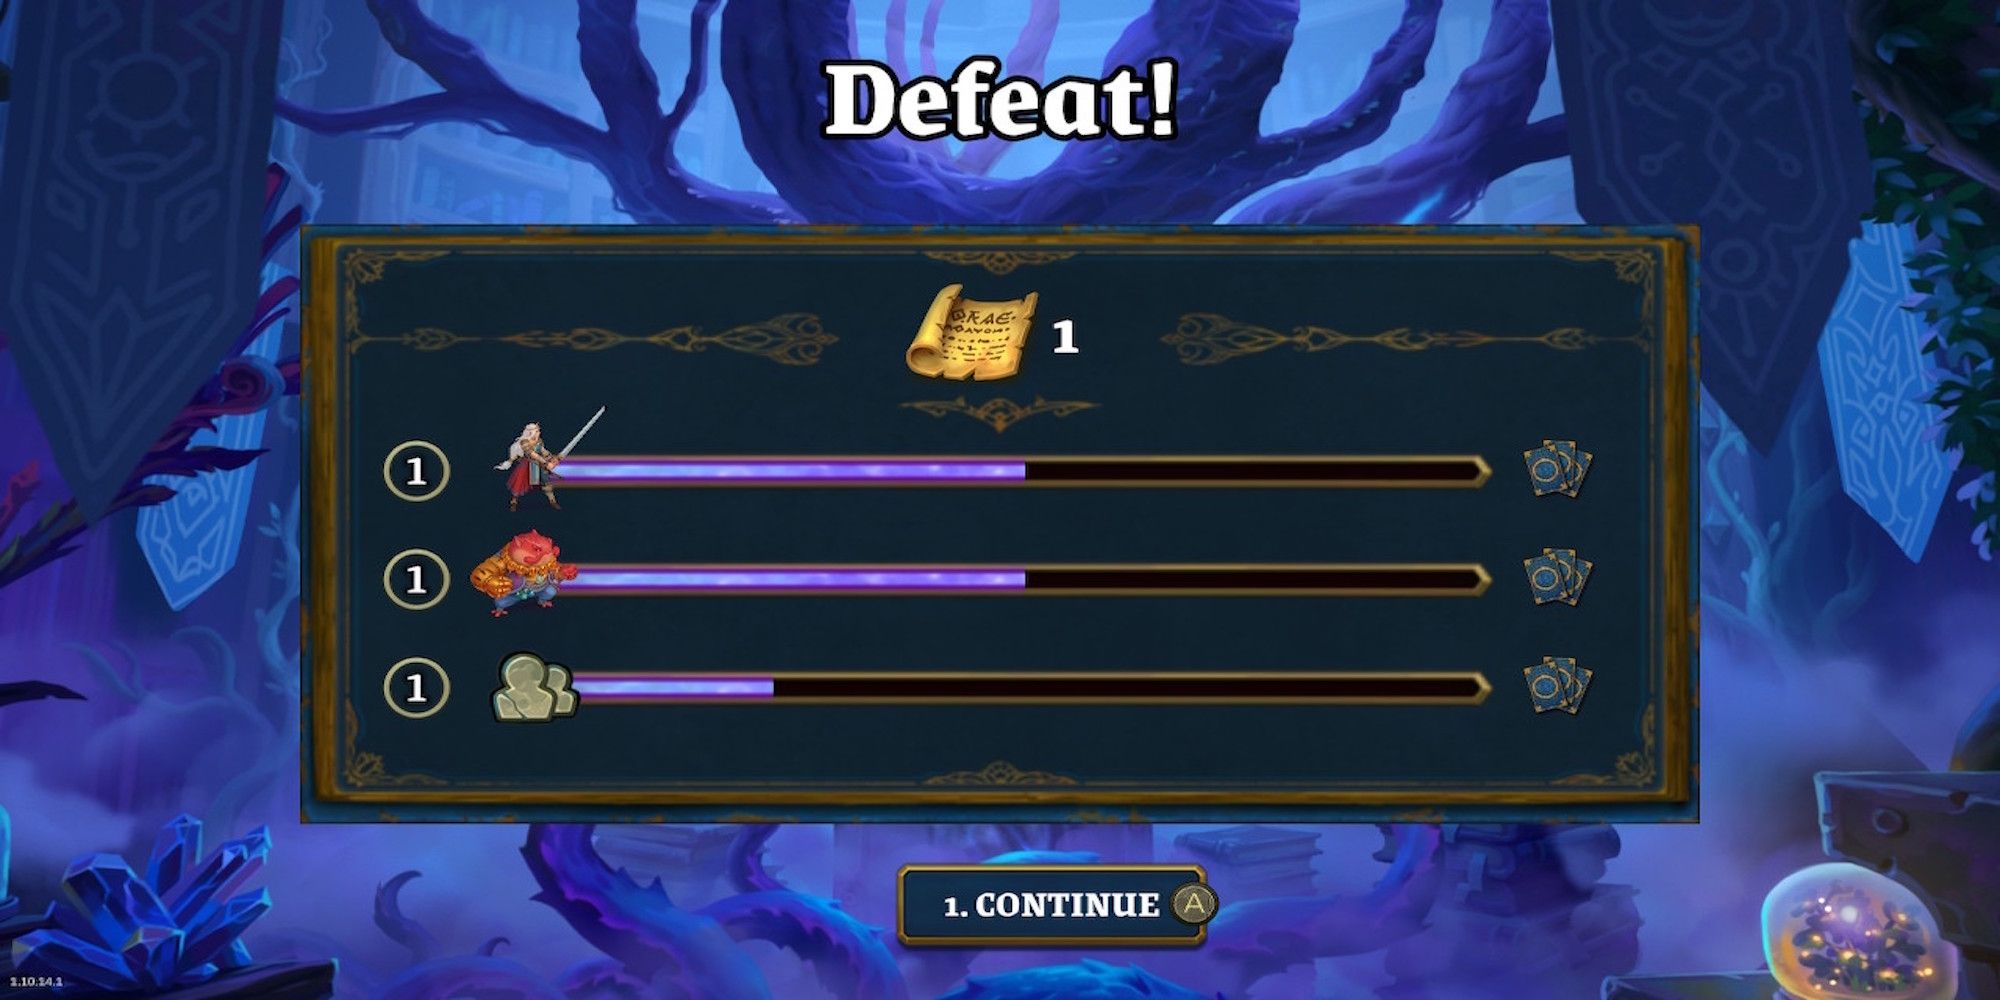 The defeat rewards menu in Roguebook